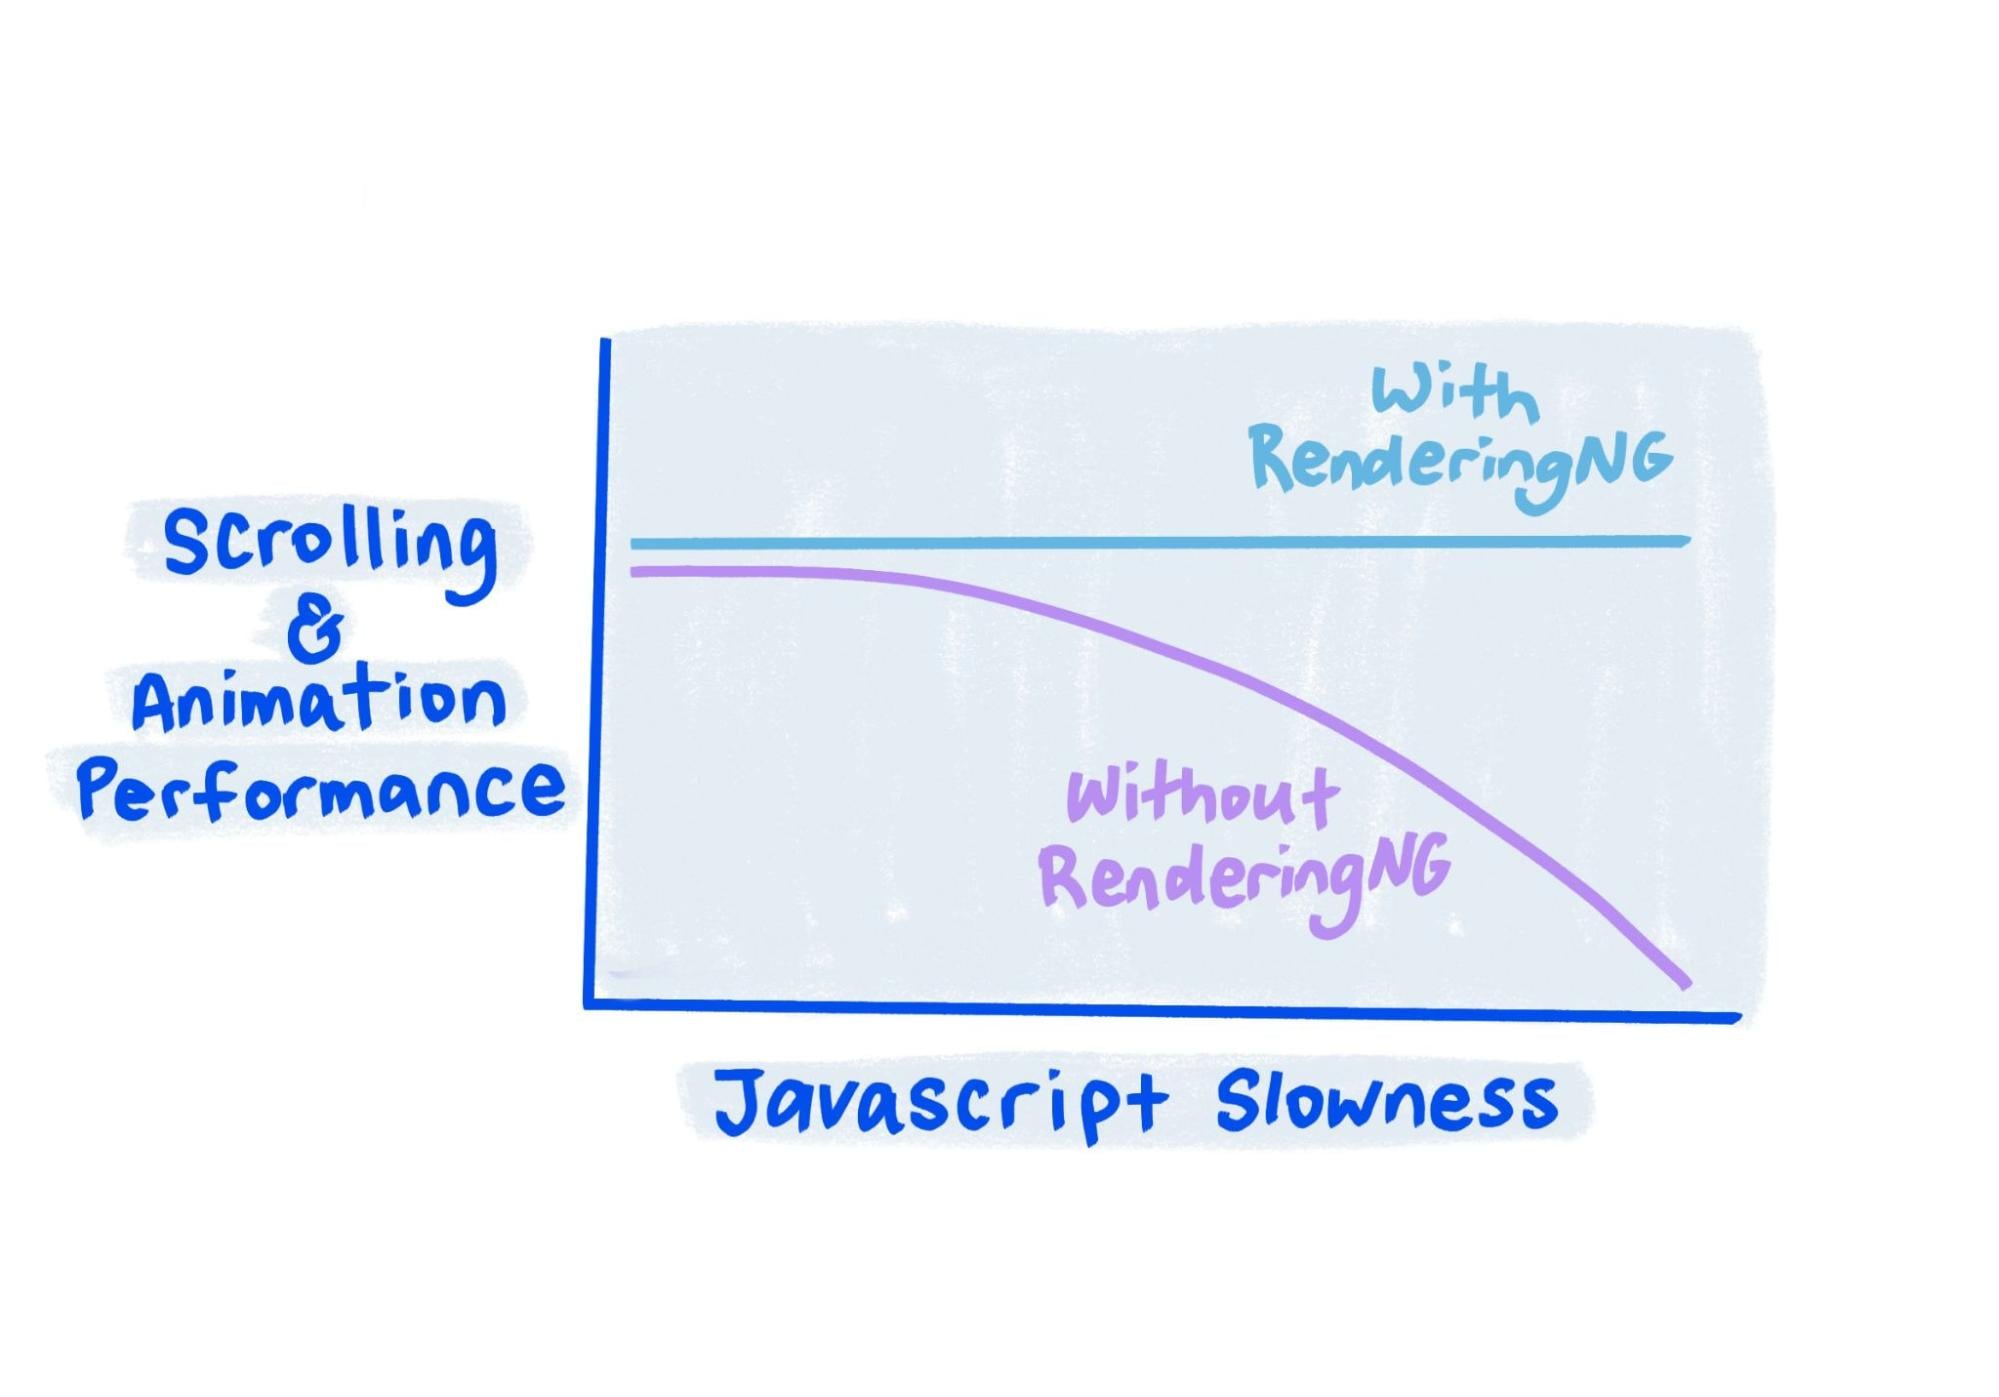 Çizim, RenderingNG ile performansın JavaScript çok yavaş olduğunda bile sabit kaldığını gösteriyor.